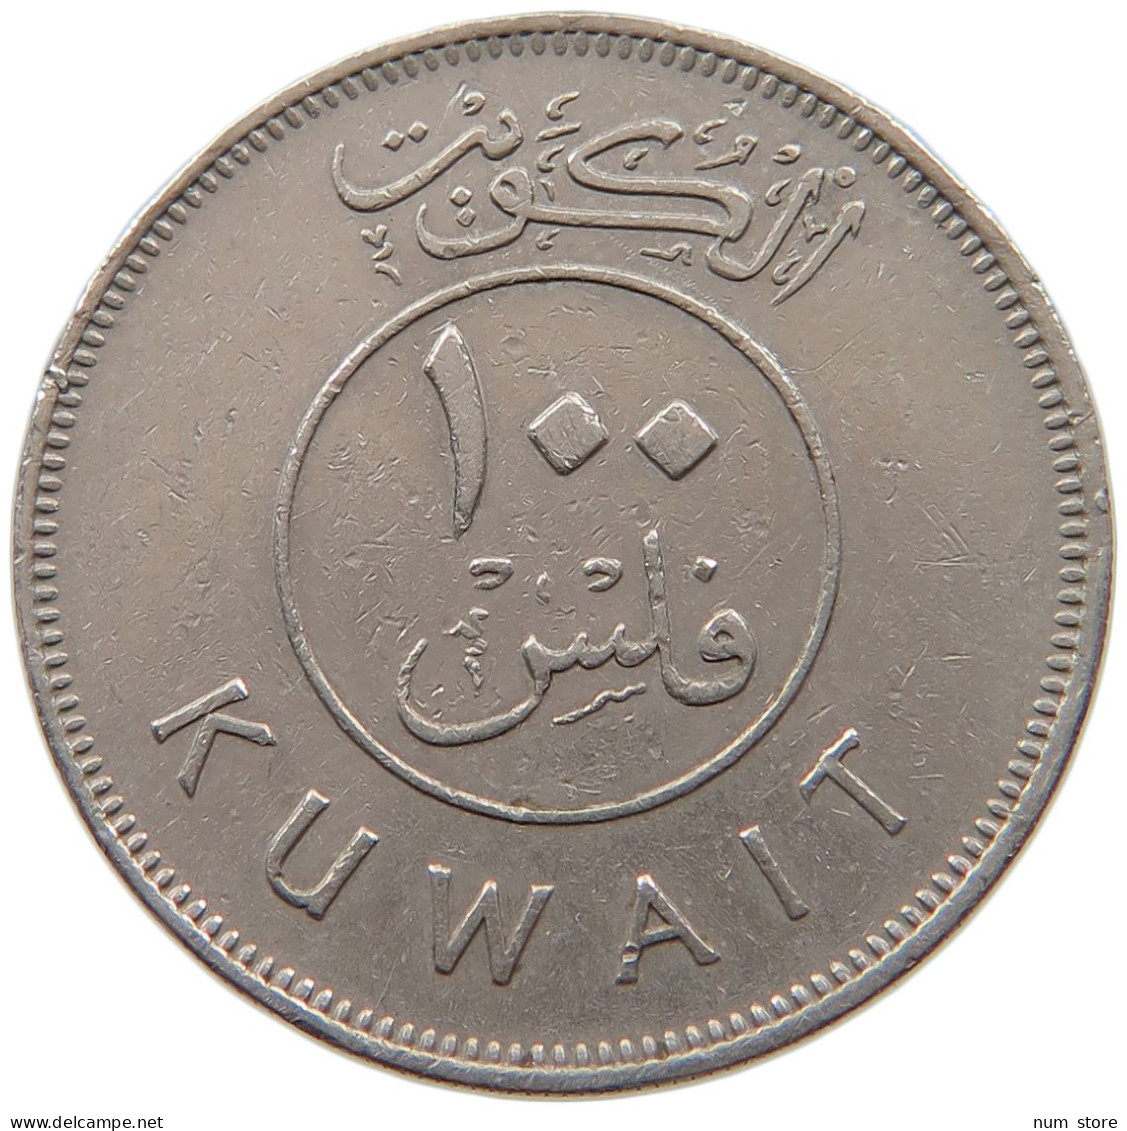 KUWAIT 100 FILS 1983  #a037 0119 - Koweït